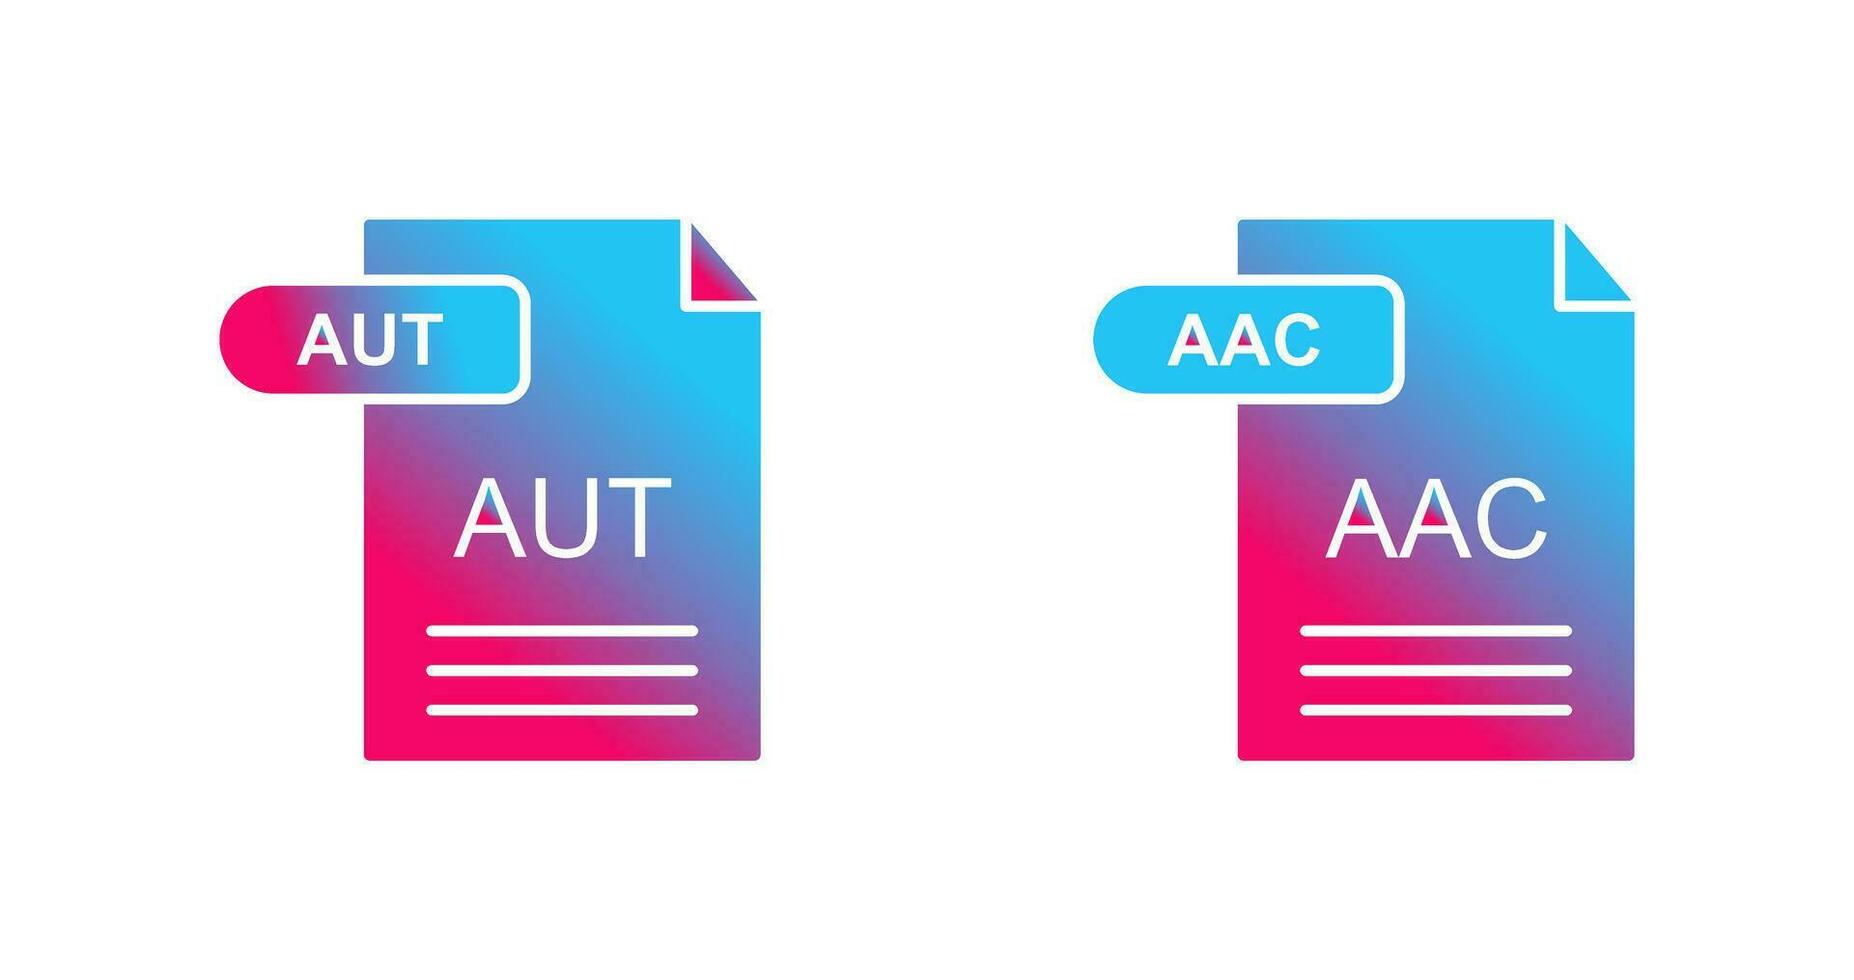 aac och aut ikon vektor